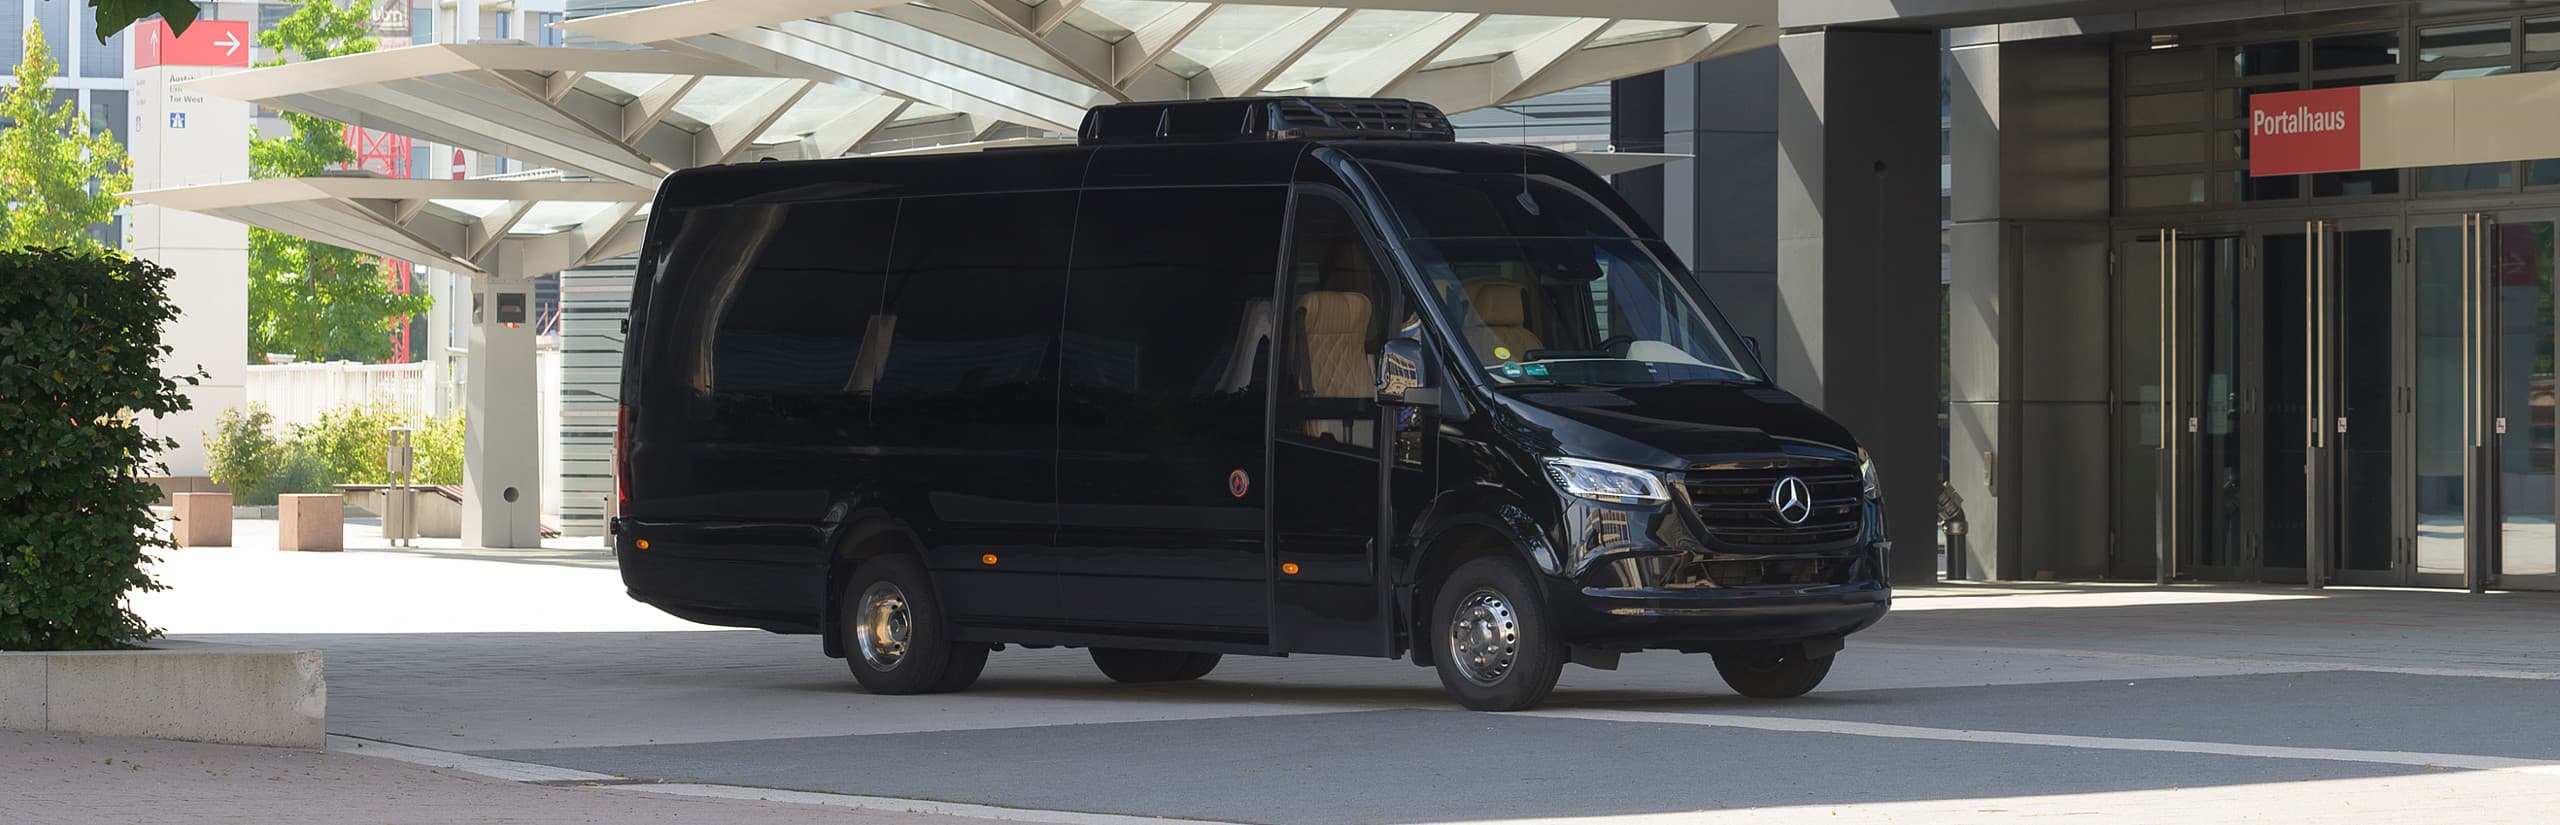 VIP Minibus, Luxury Minibus, VIP Sprinter Rentals in Berlin & Potsdam